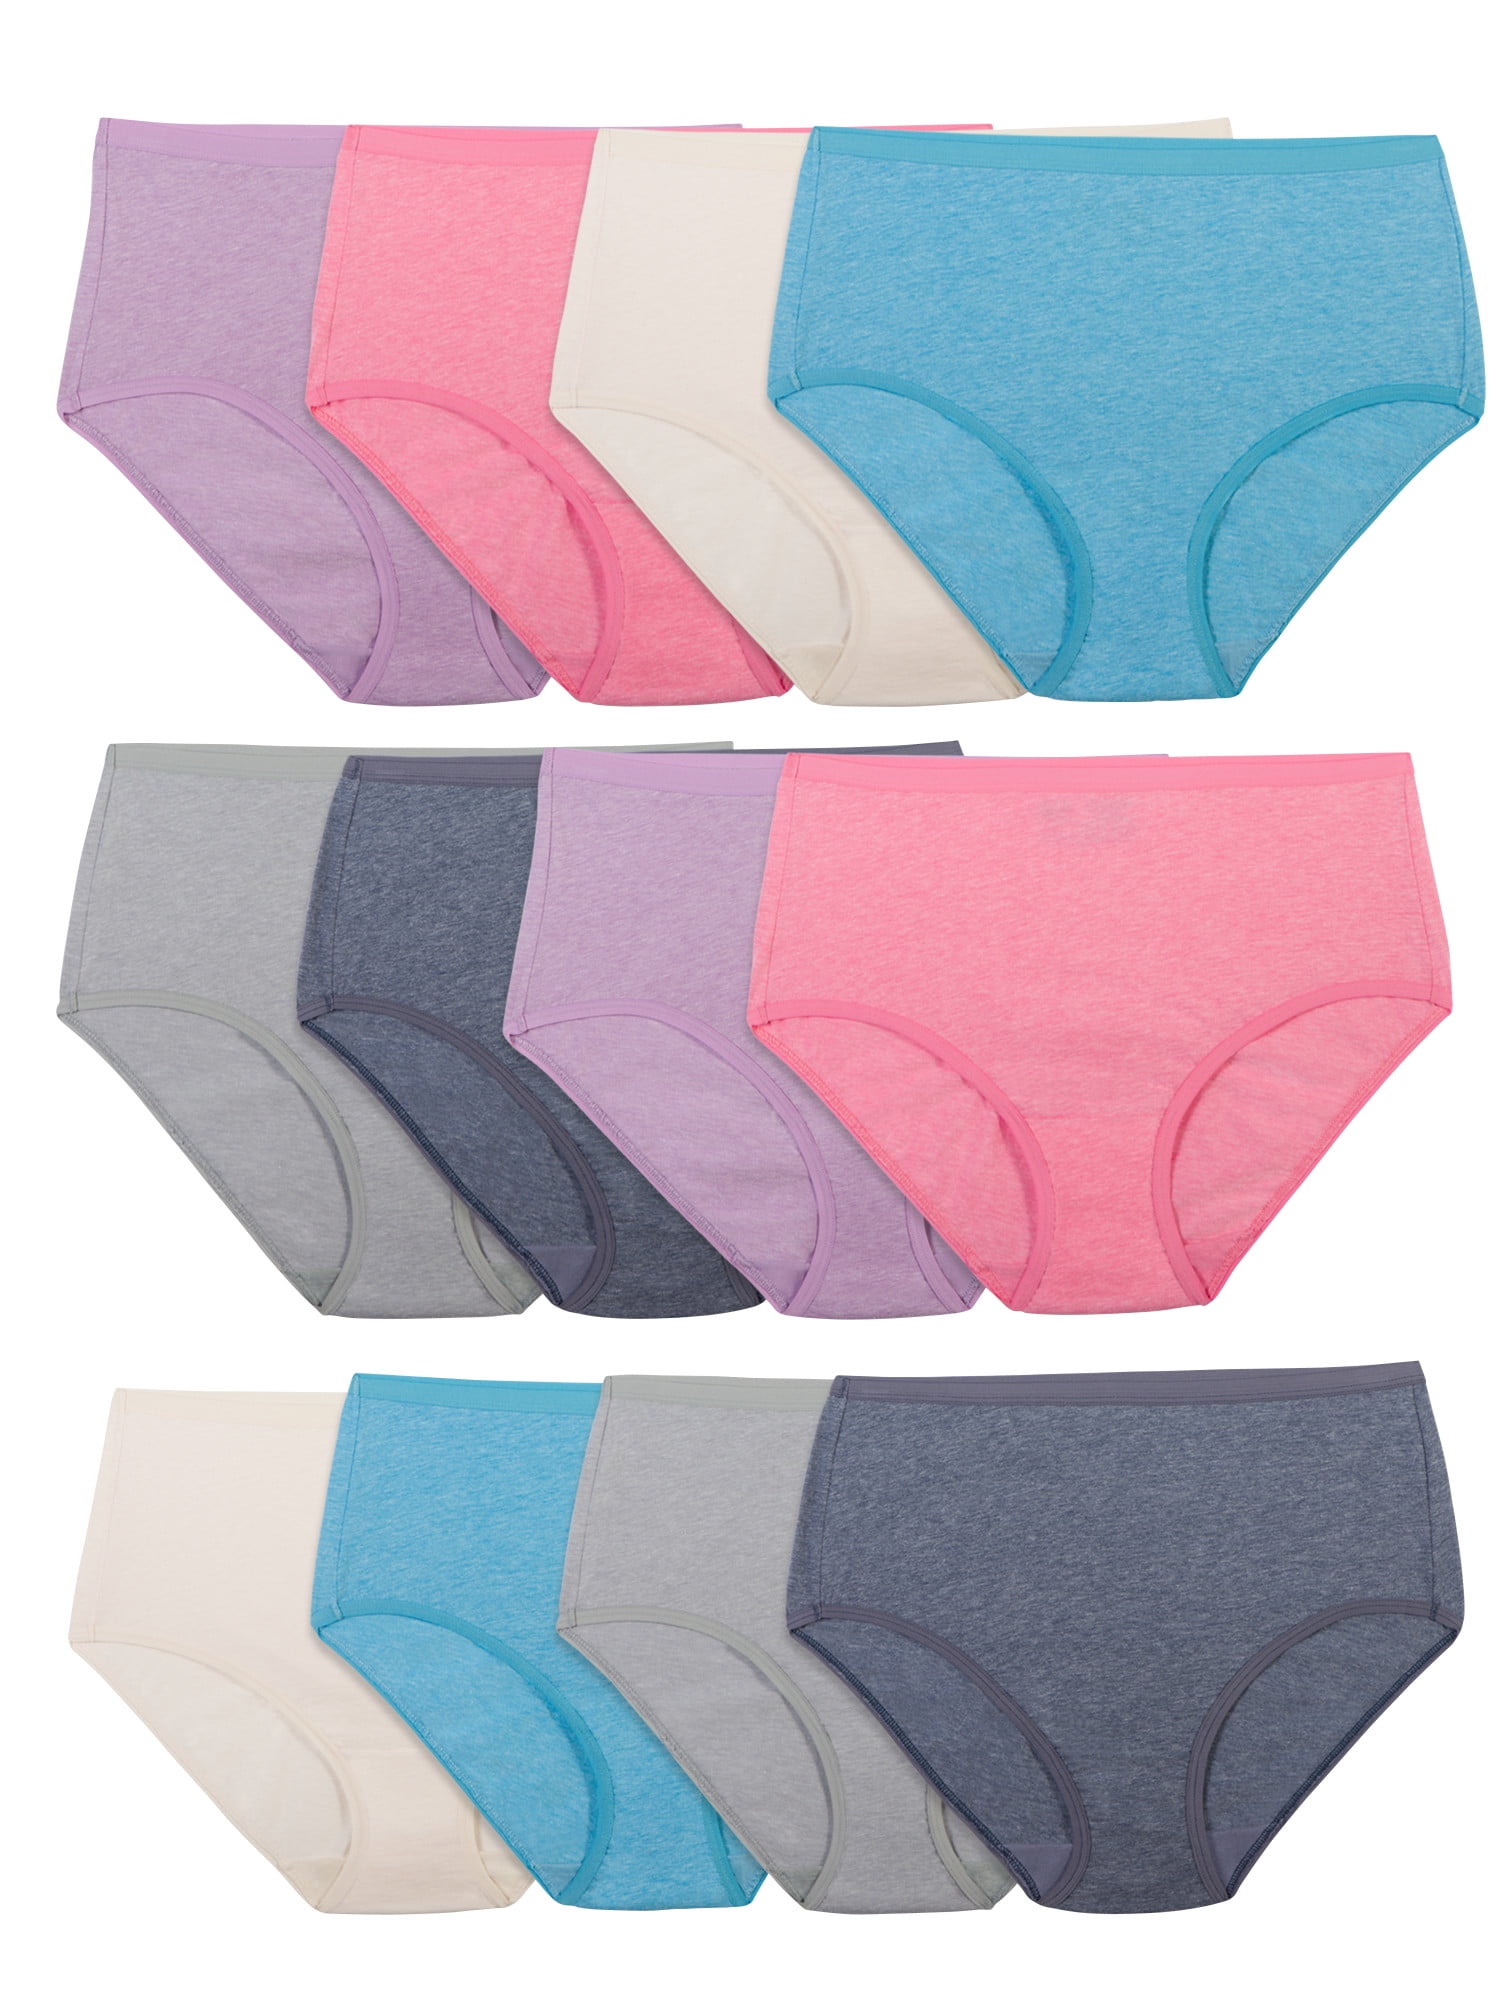 Fruit of the Loom Women's Beyondsoft Brief Underwear, 12 Pack, Sizes M-3XL  